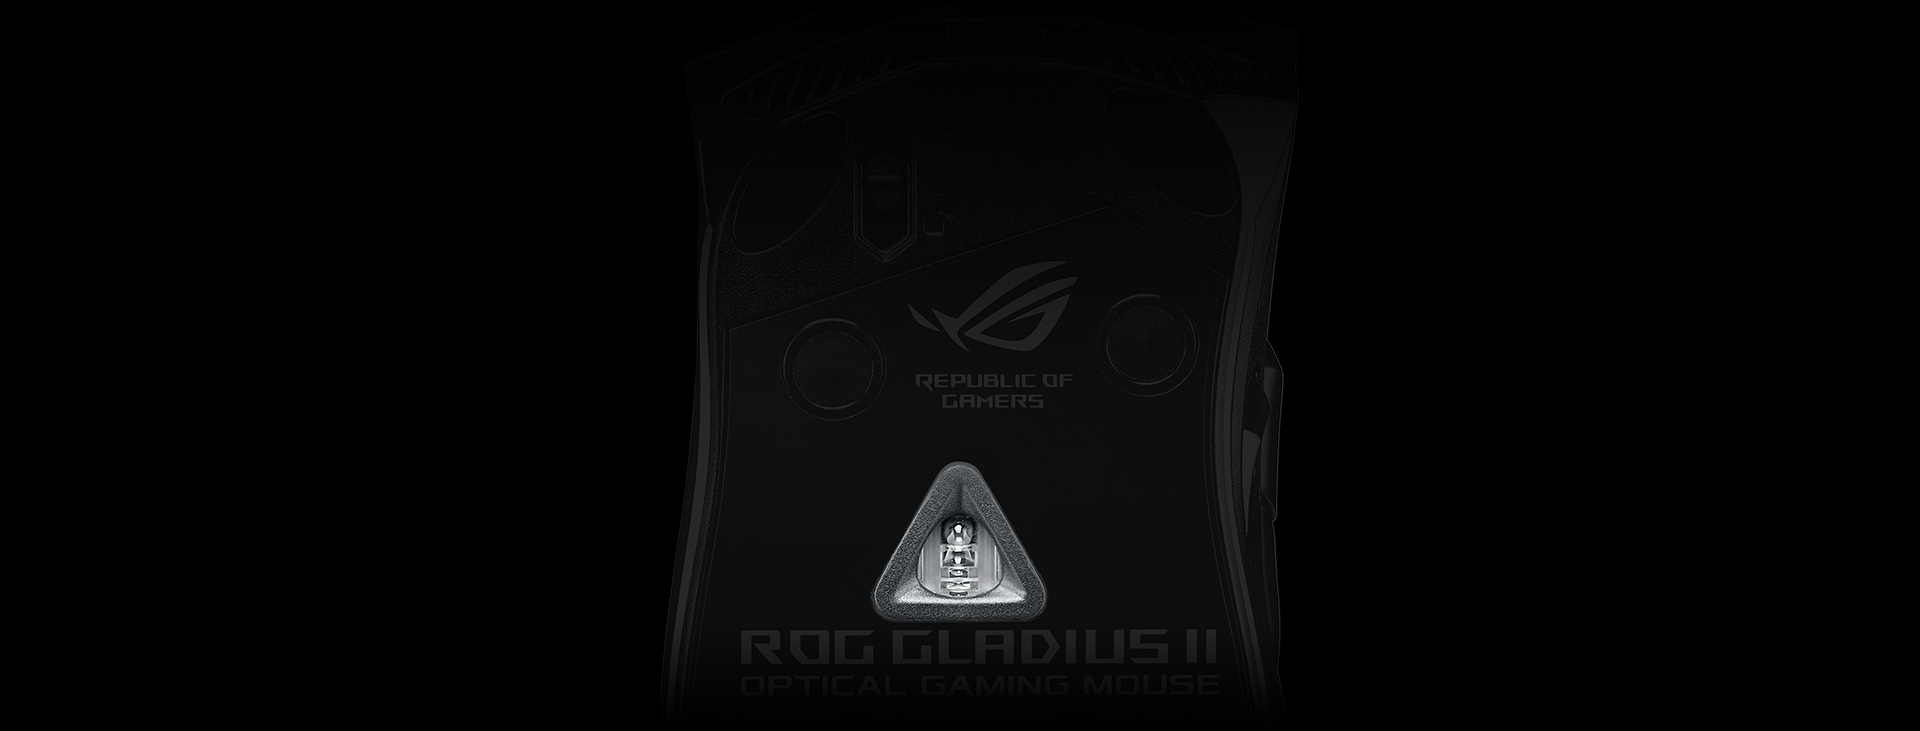 Chuột Asus ROG Gladius II (USB/RGB/màu đen)  sử dụng mắt cảm biến cao cấp